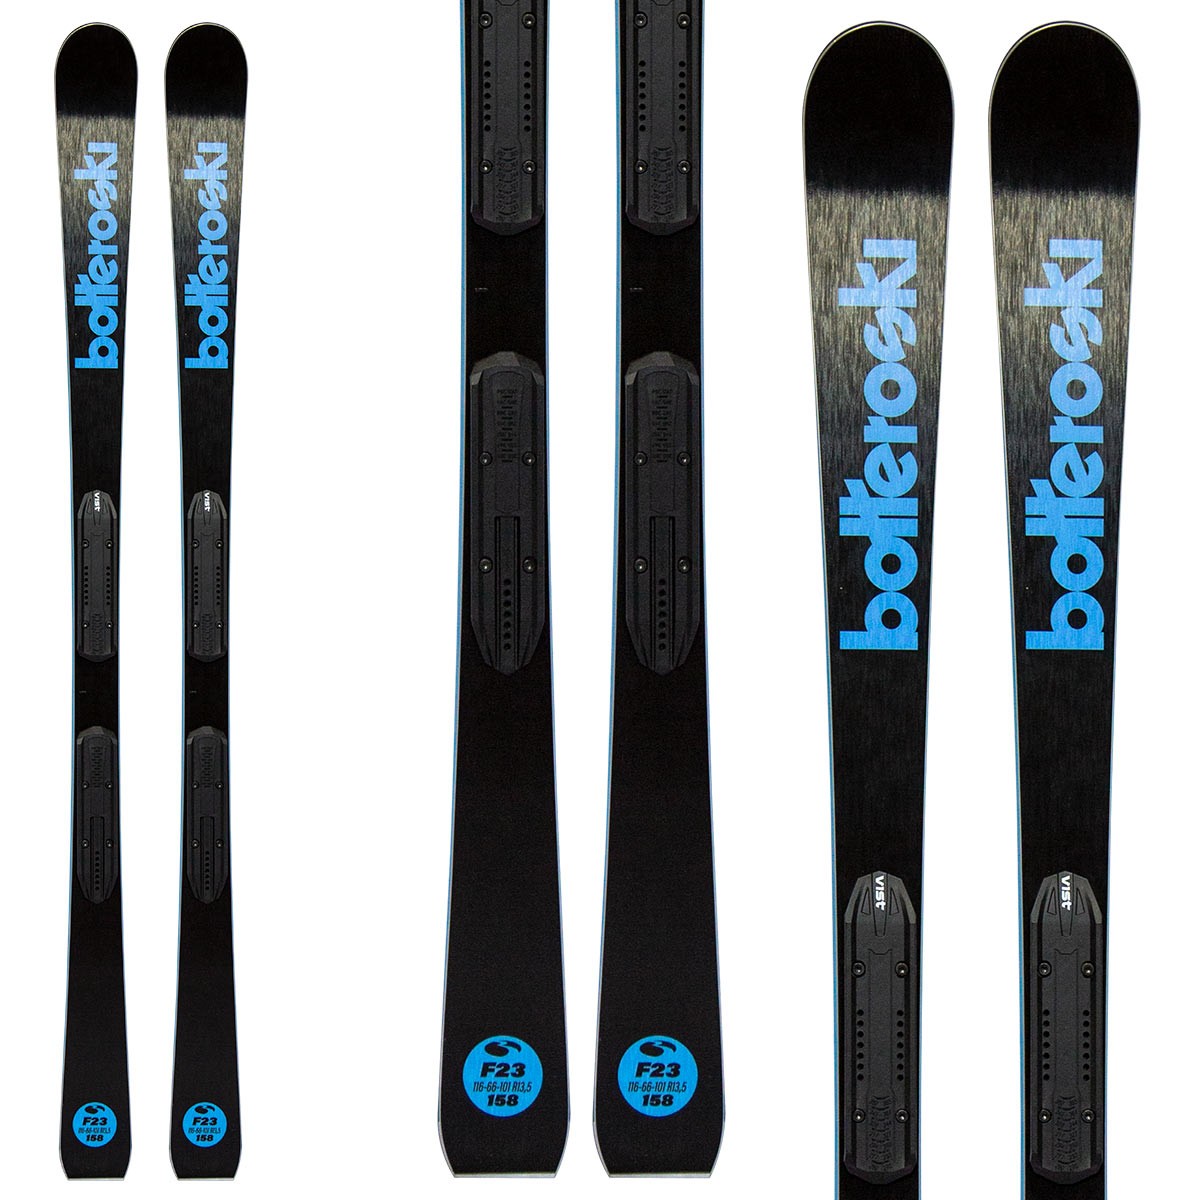  Sci Bottero Ski F23 con attacchi Vsp310 con piastra Speed System (Colore: nero-blu, Taglia: 158) 